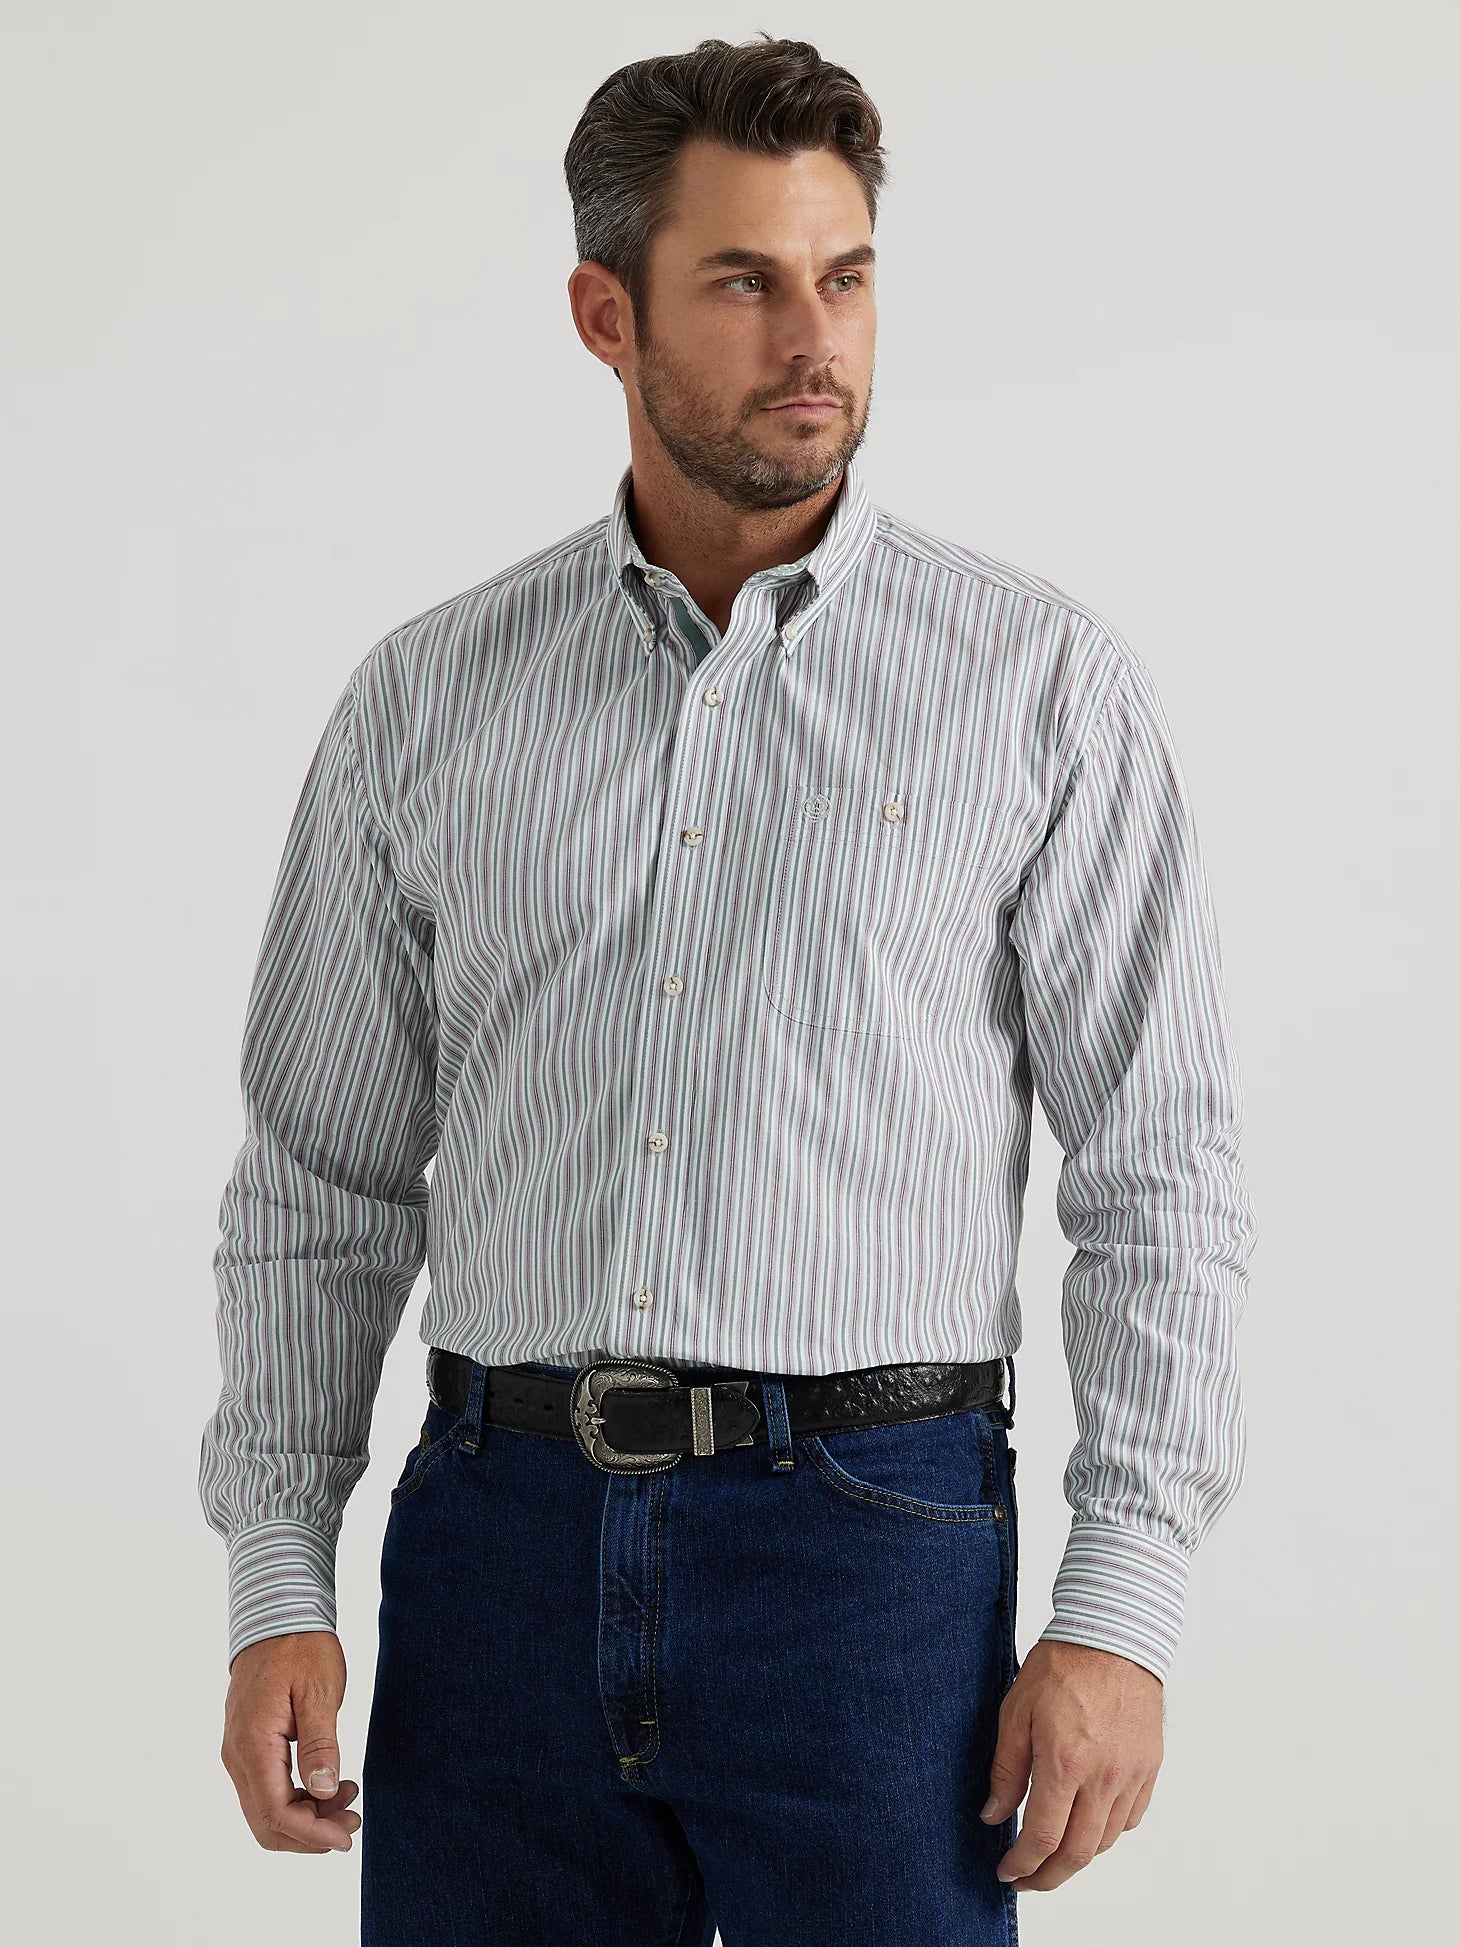 Wrangler Men's George Strait Stripe Shirt